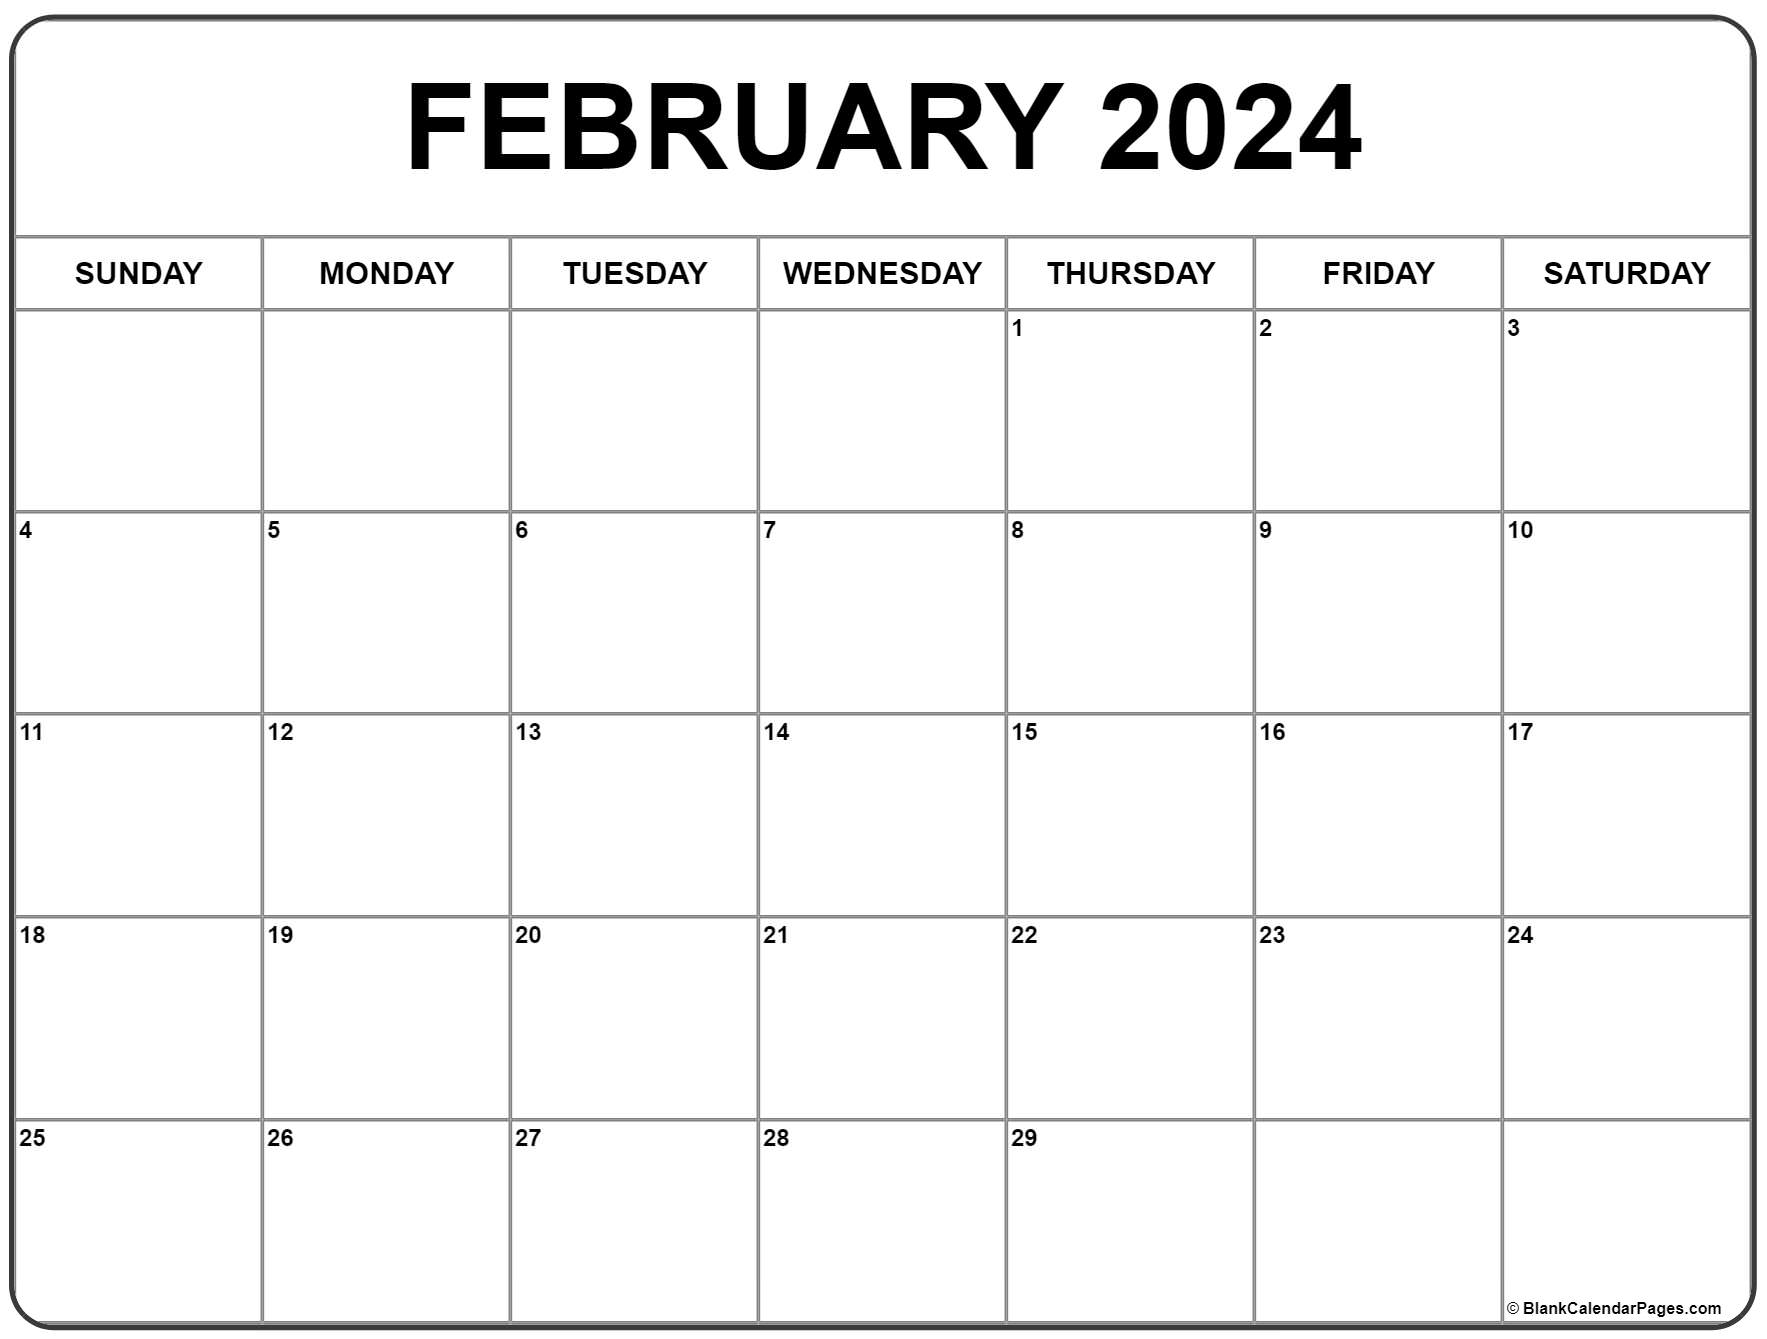 February 2024 Calendar | Free Printable Calendar for Printable Calendar For February 2024